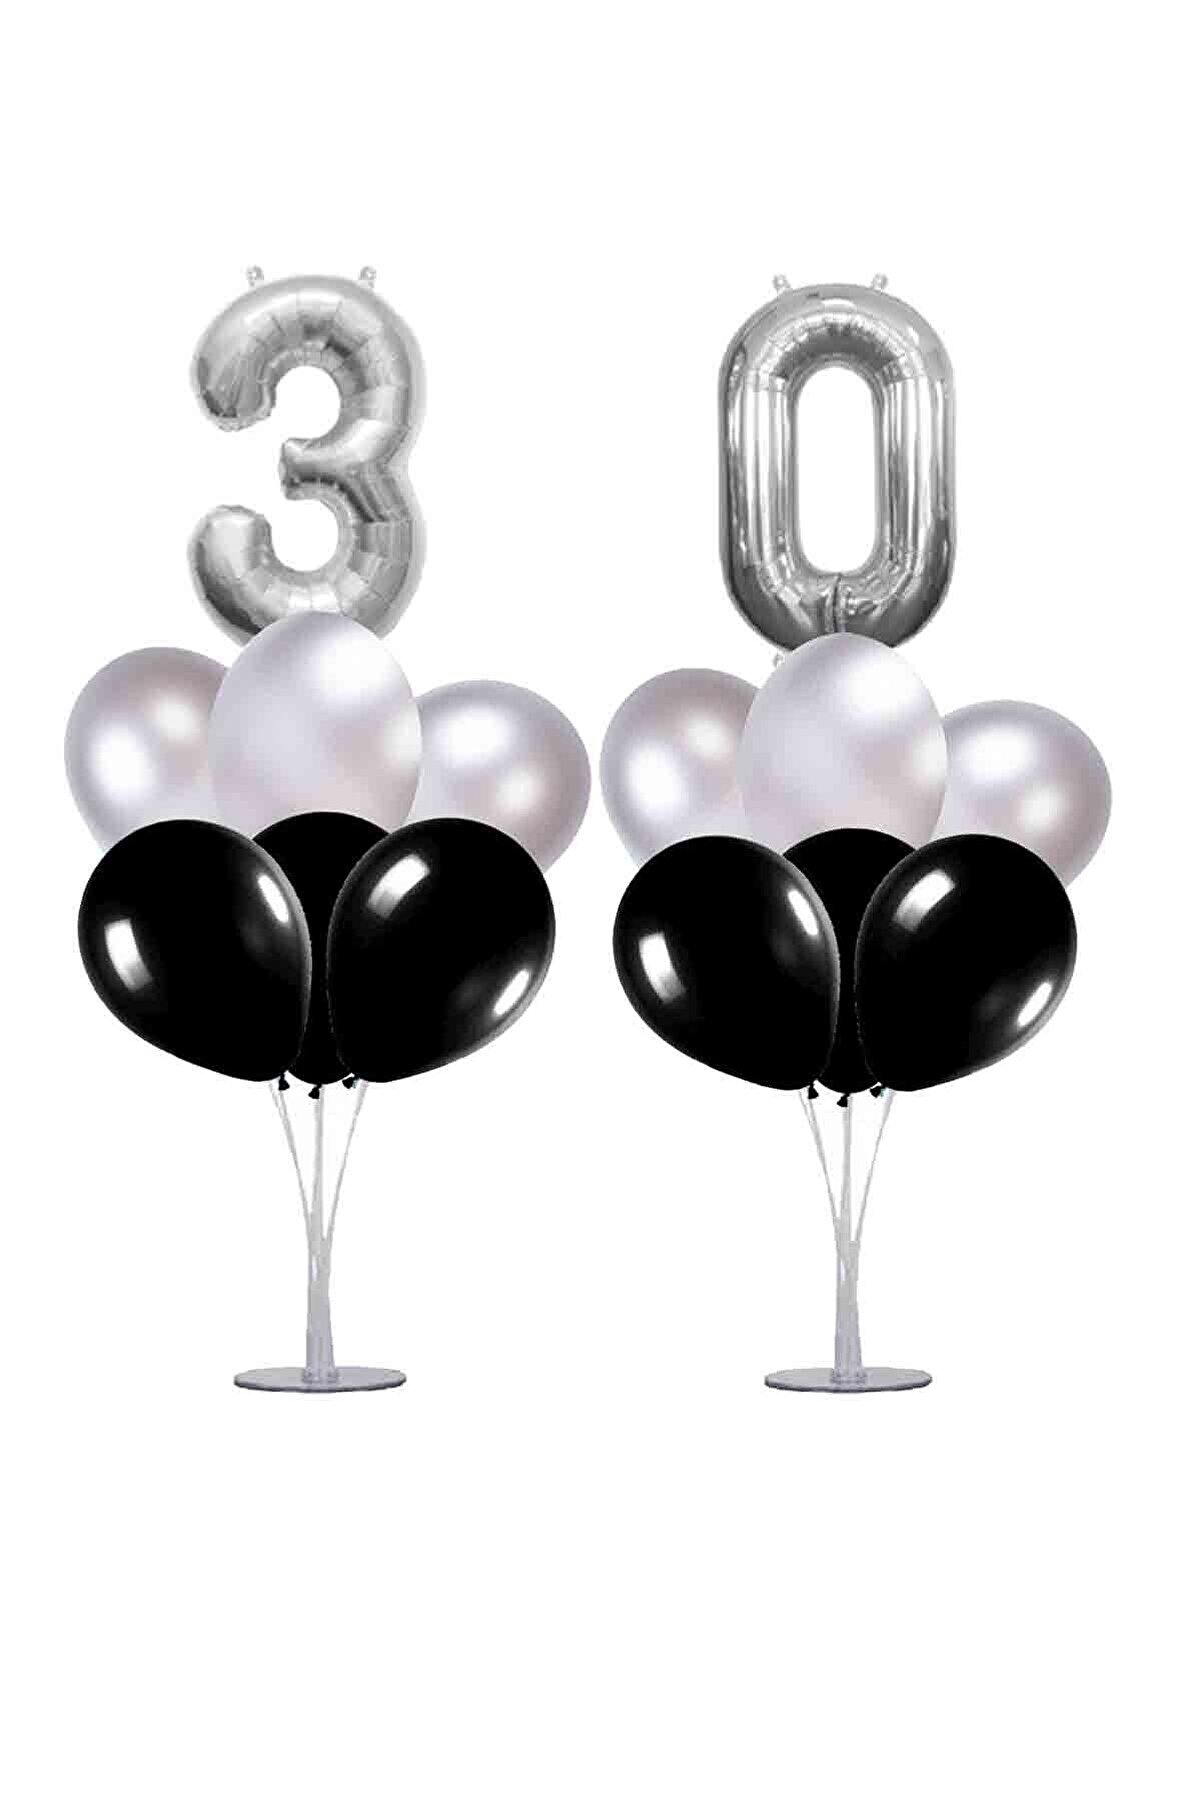 partisüs 30 Yaş Siyah-gümüş Balon Standlı Doğum Günü Balon Süsleme Seti 24 Parça